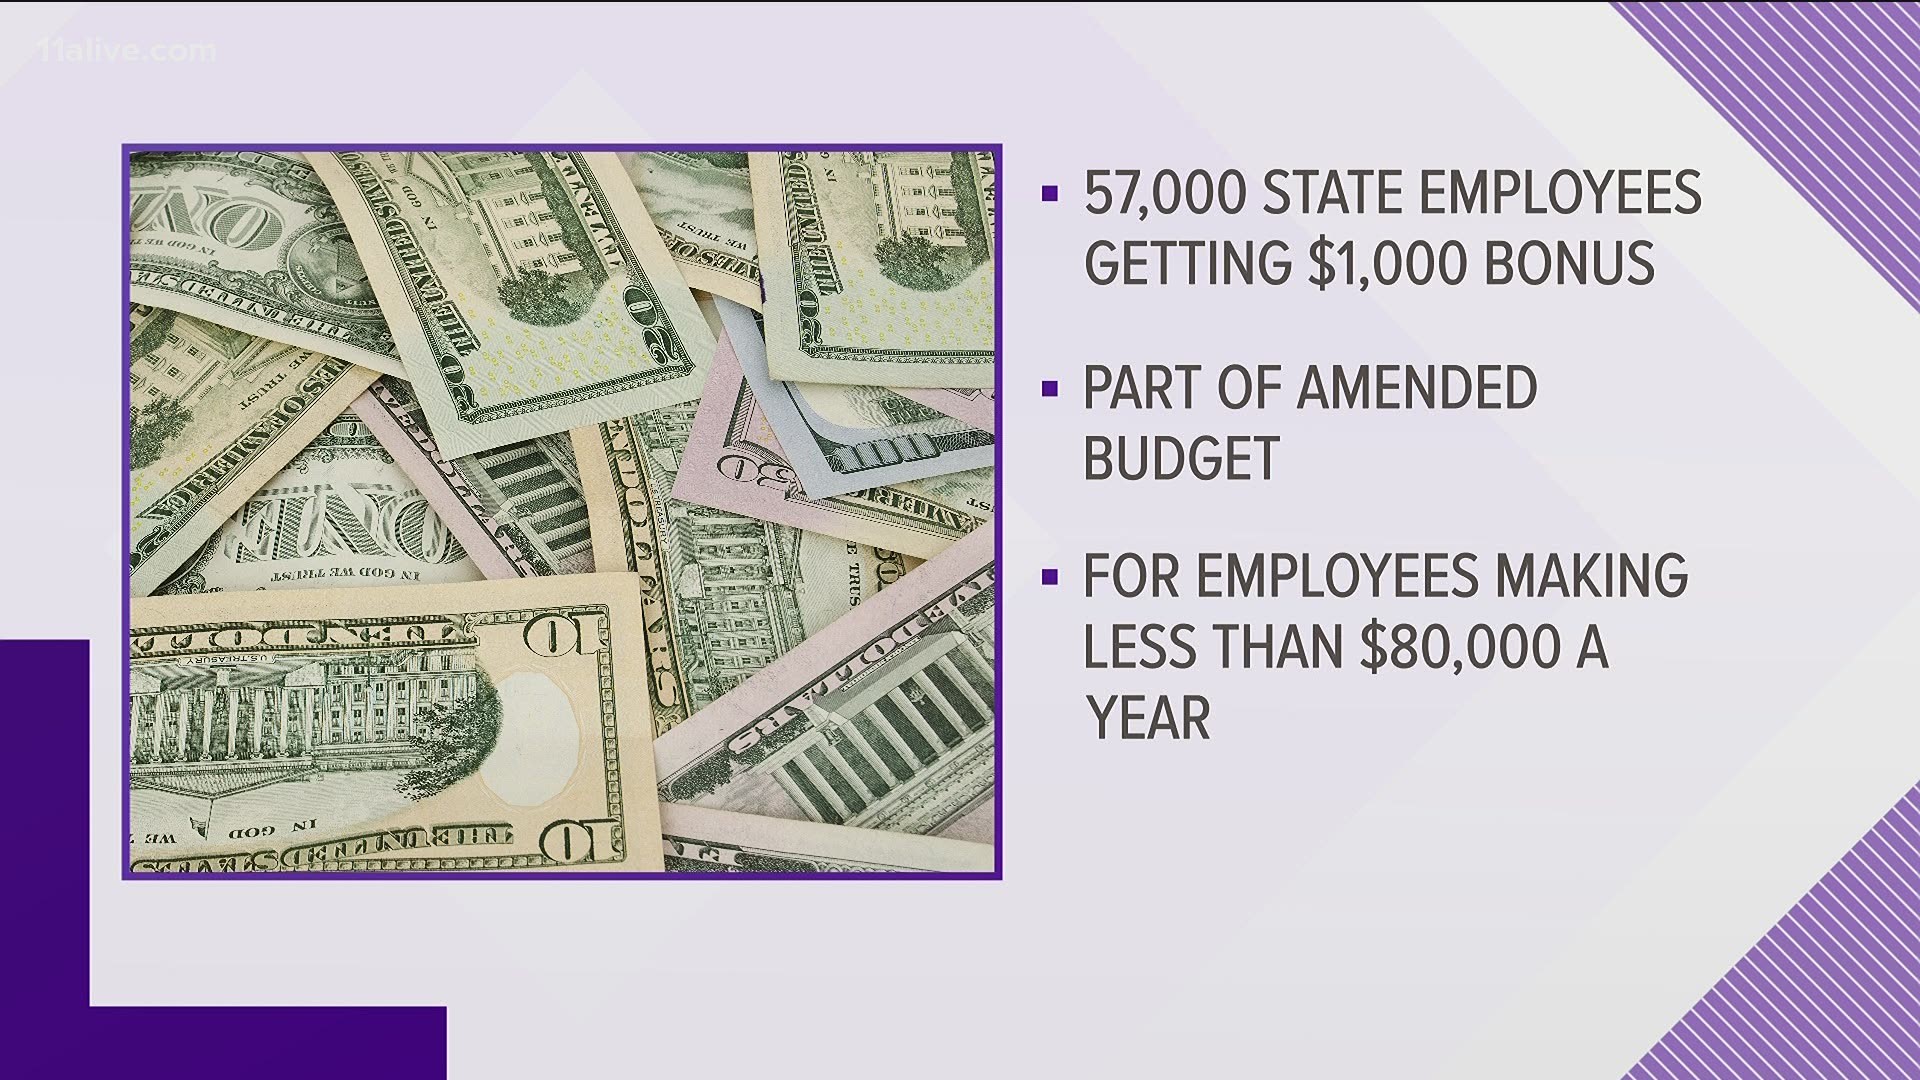 State employees to get 1,000 bonus